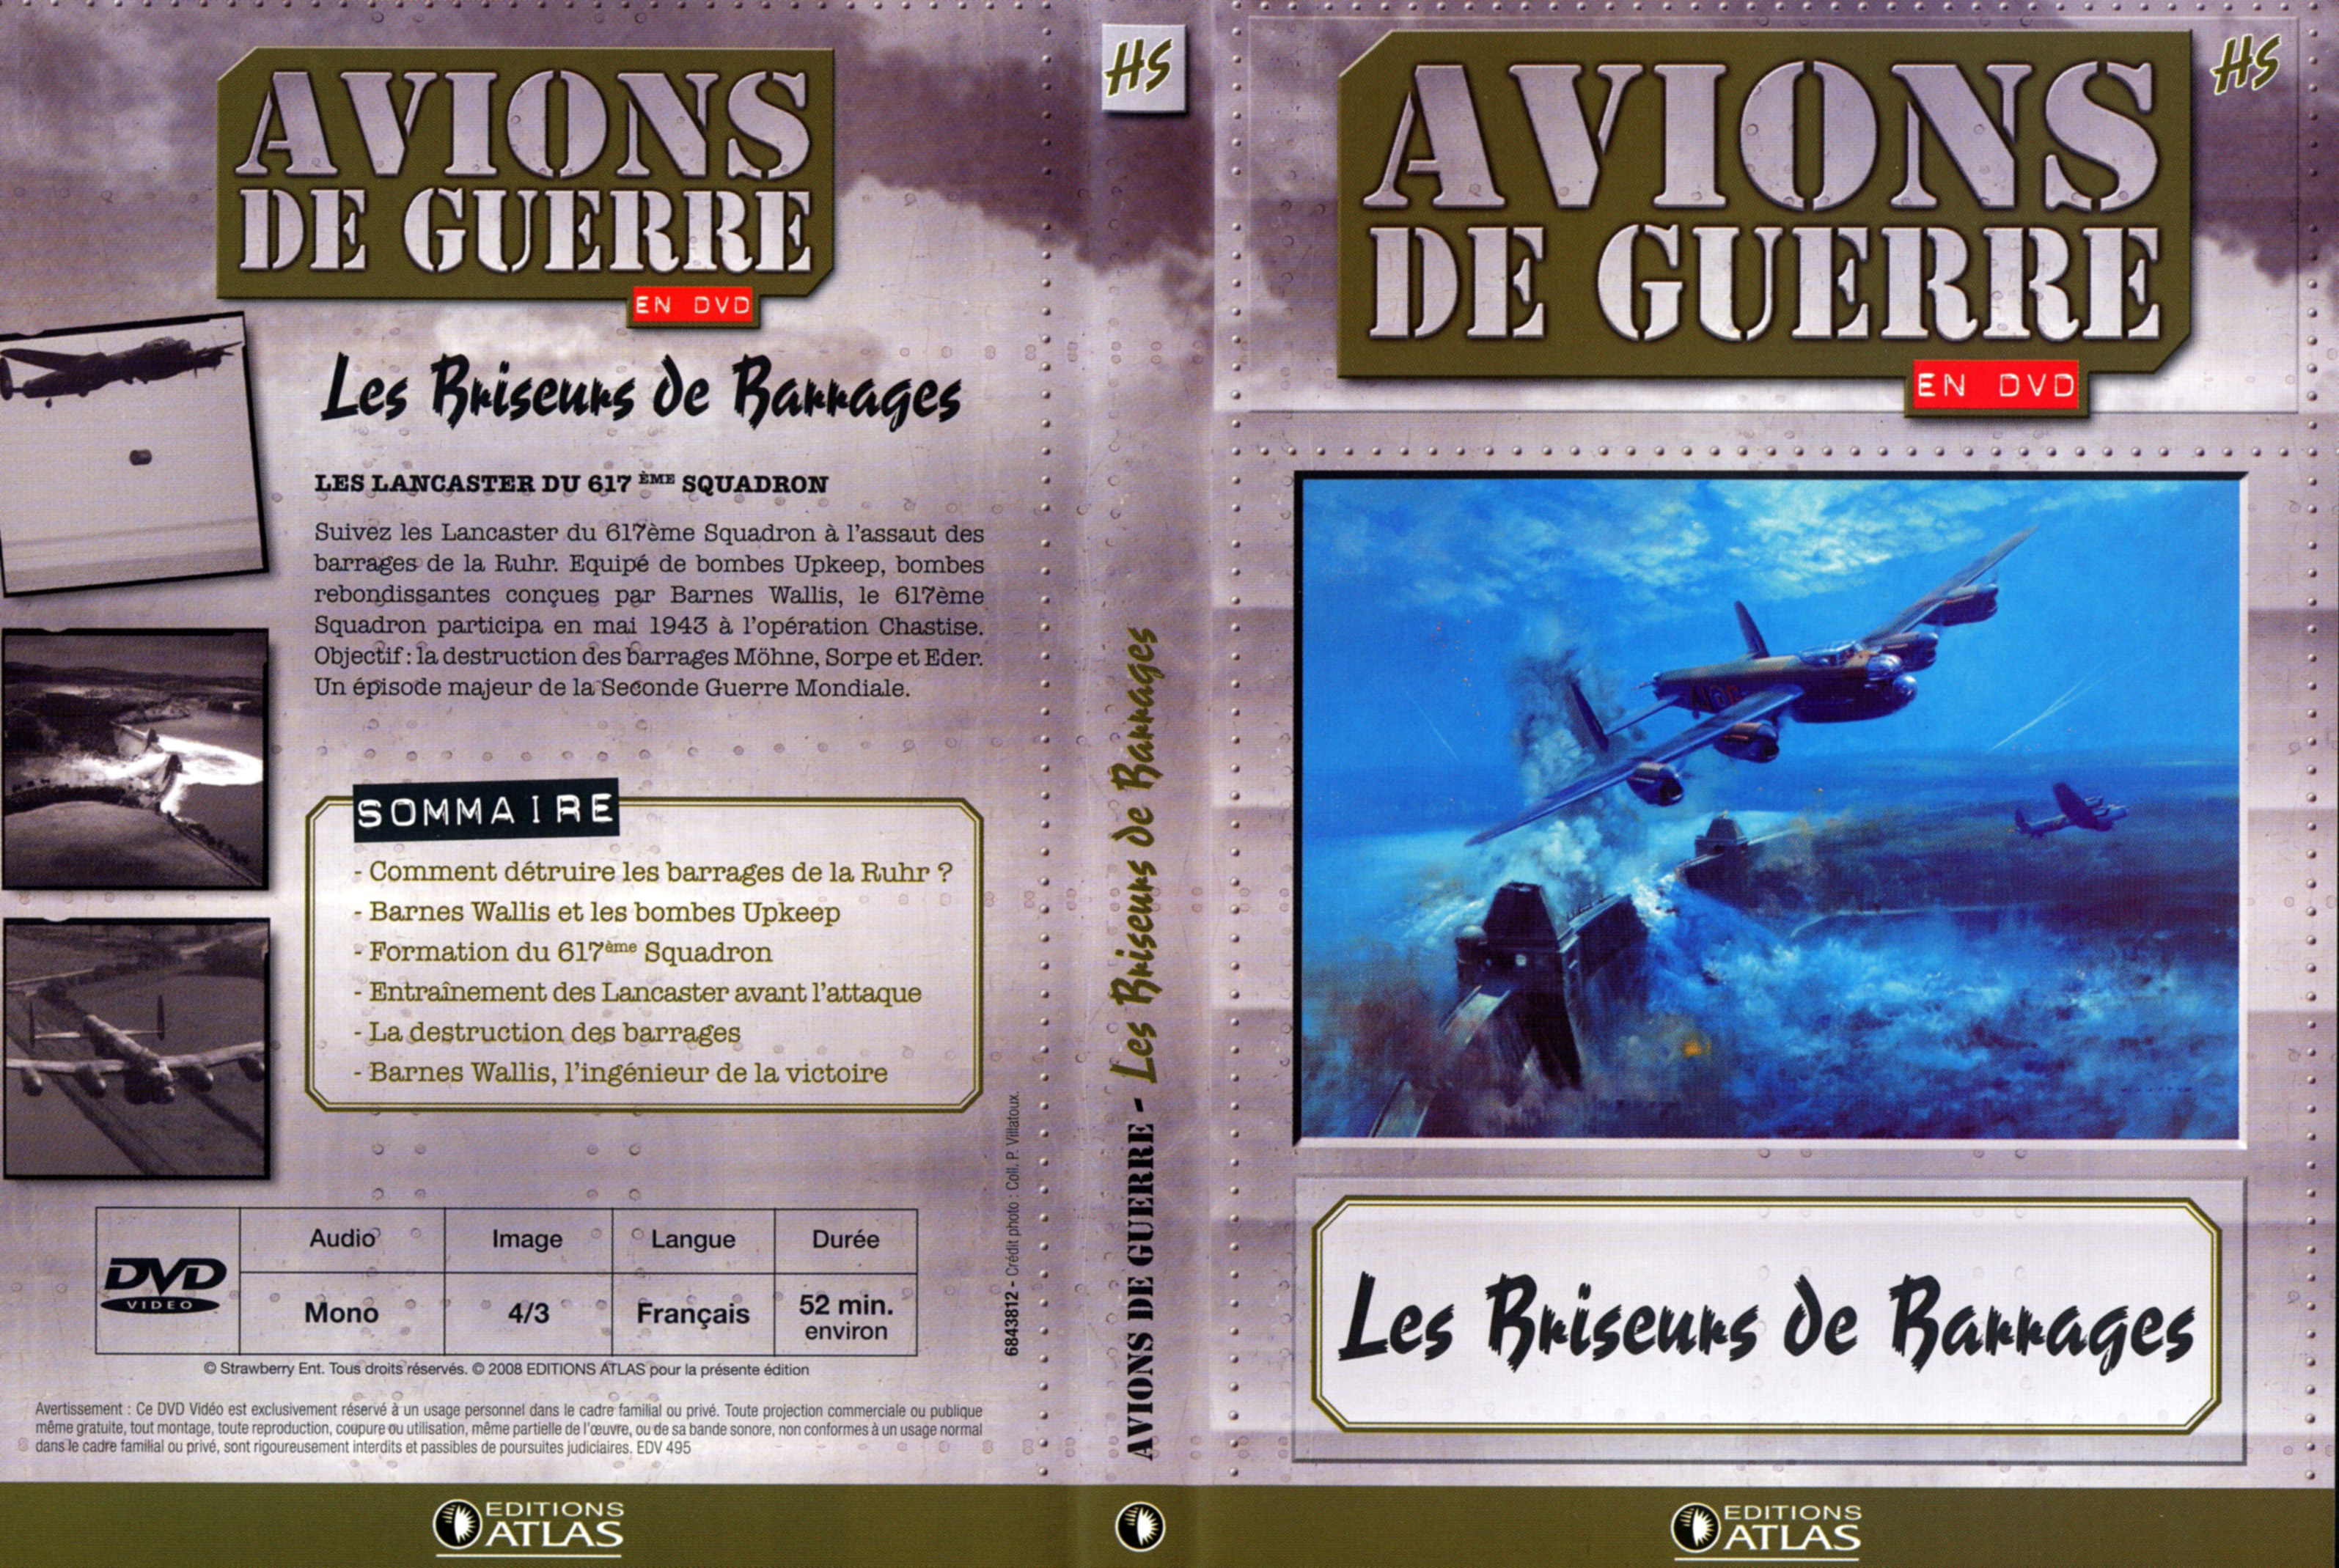 Jaquette DVD Avions de guerre en DVD HS Les Brisseurs de Barrages